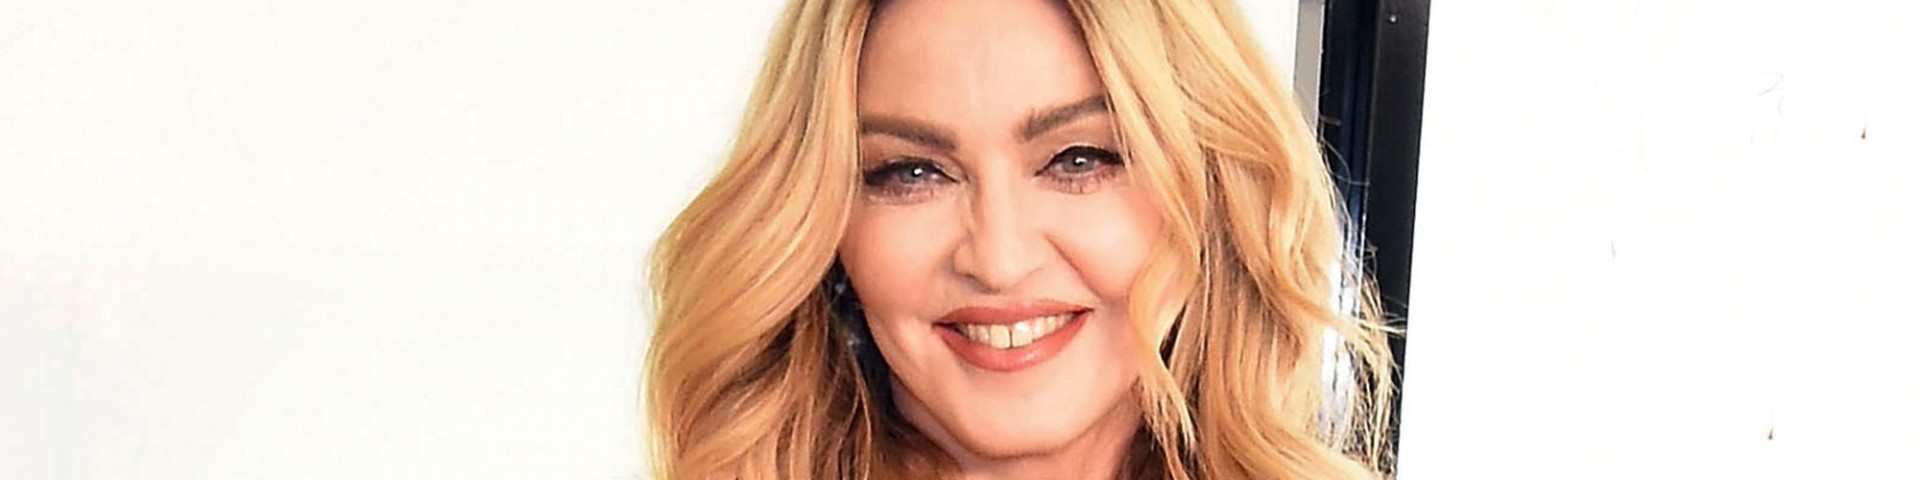 Madonna: "Madame X" è il nuovo album anticipato da "Medellin" feat. Maluma